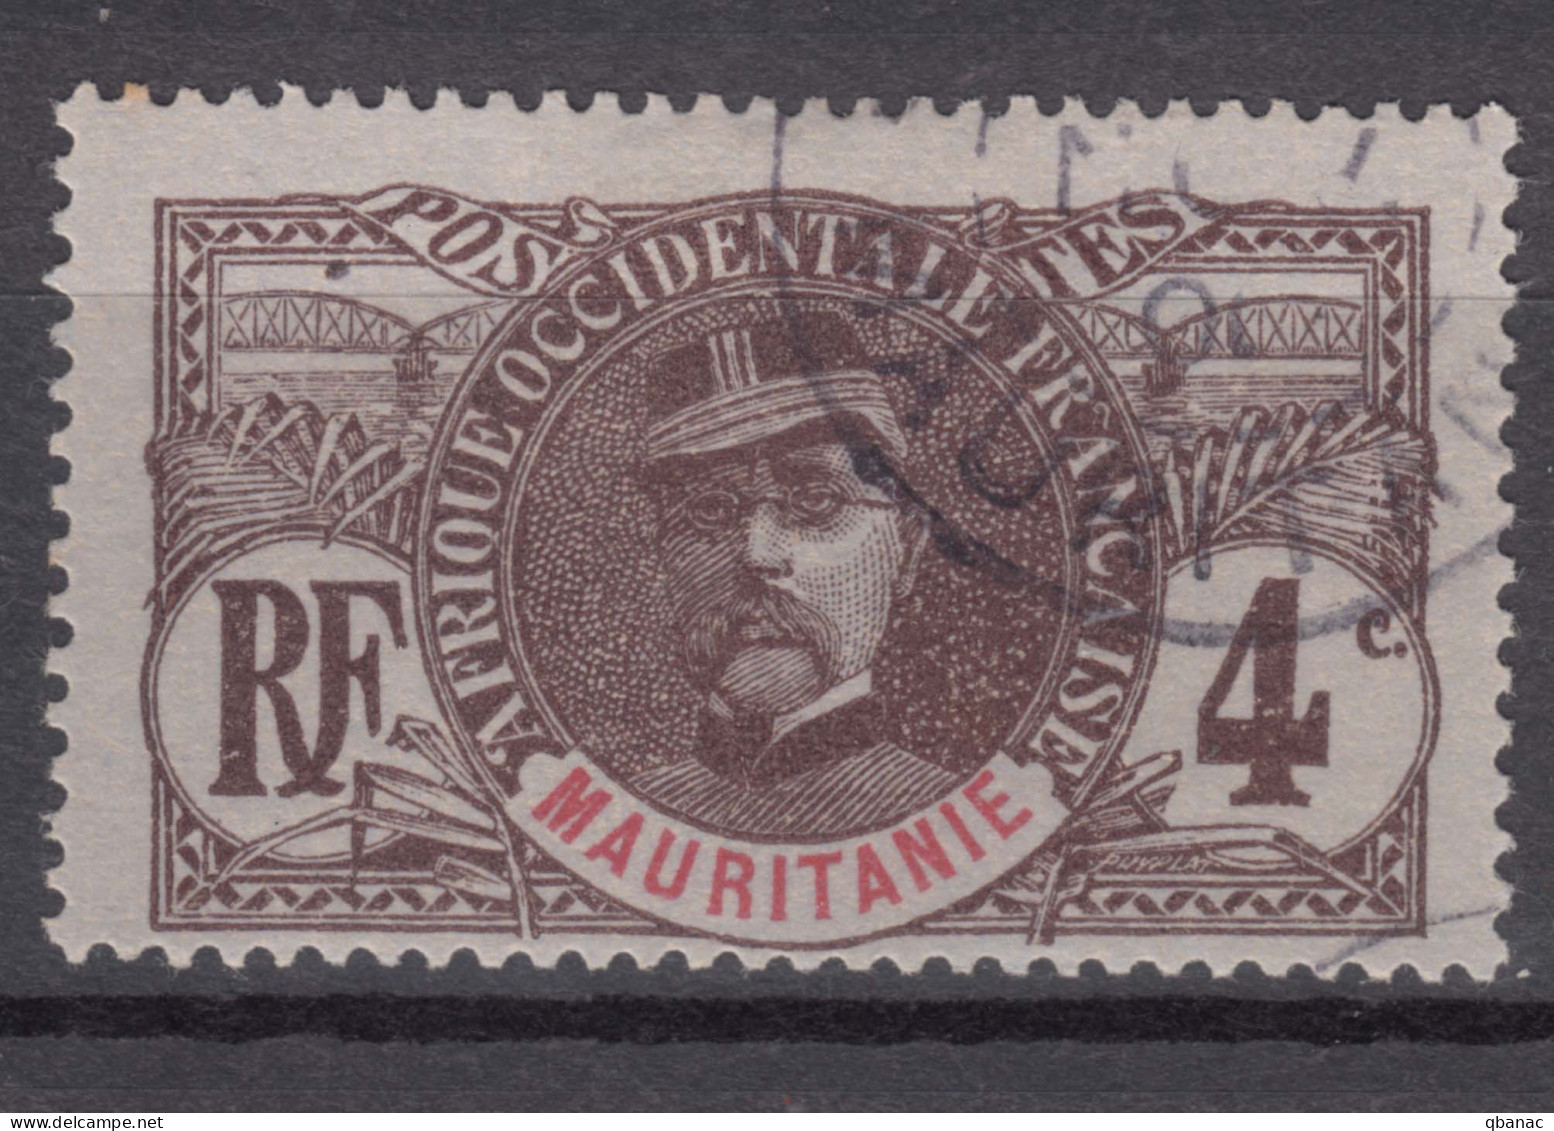 Mauritania Mauritanie 1906 Yvert#3 Used - Used Stamps